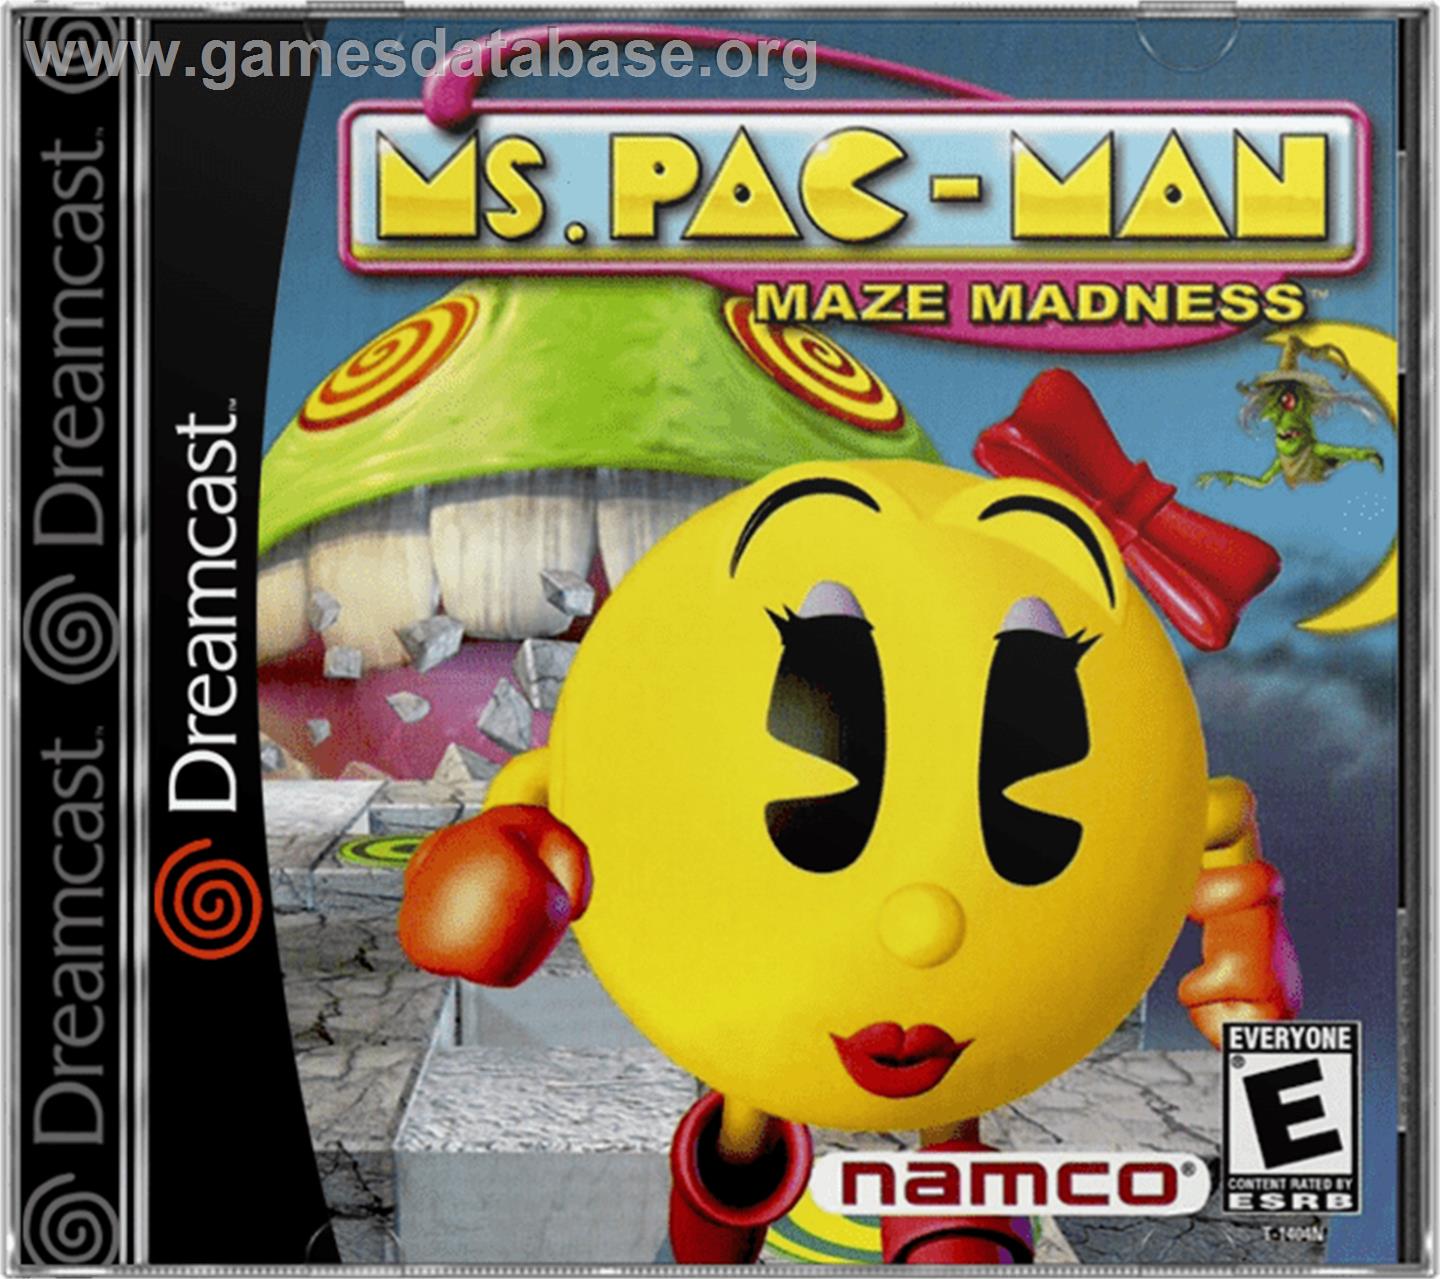 Ms. Pac-Man Maze Madness - Sega Dreamcast - Artwork - Box